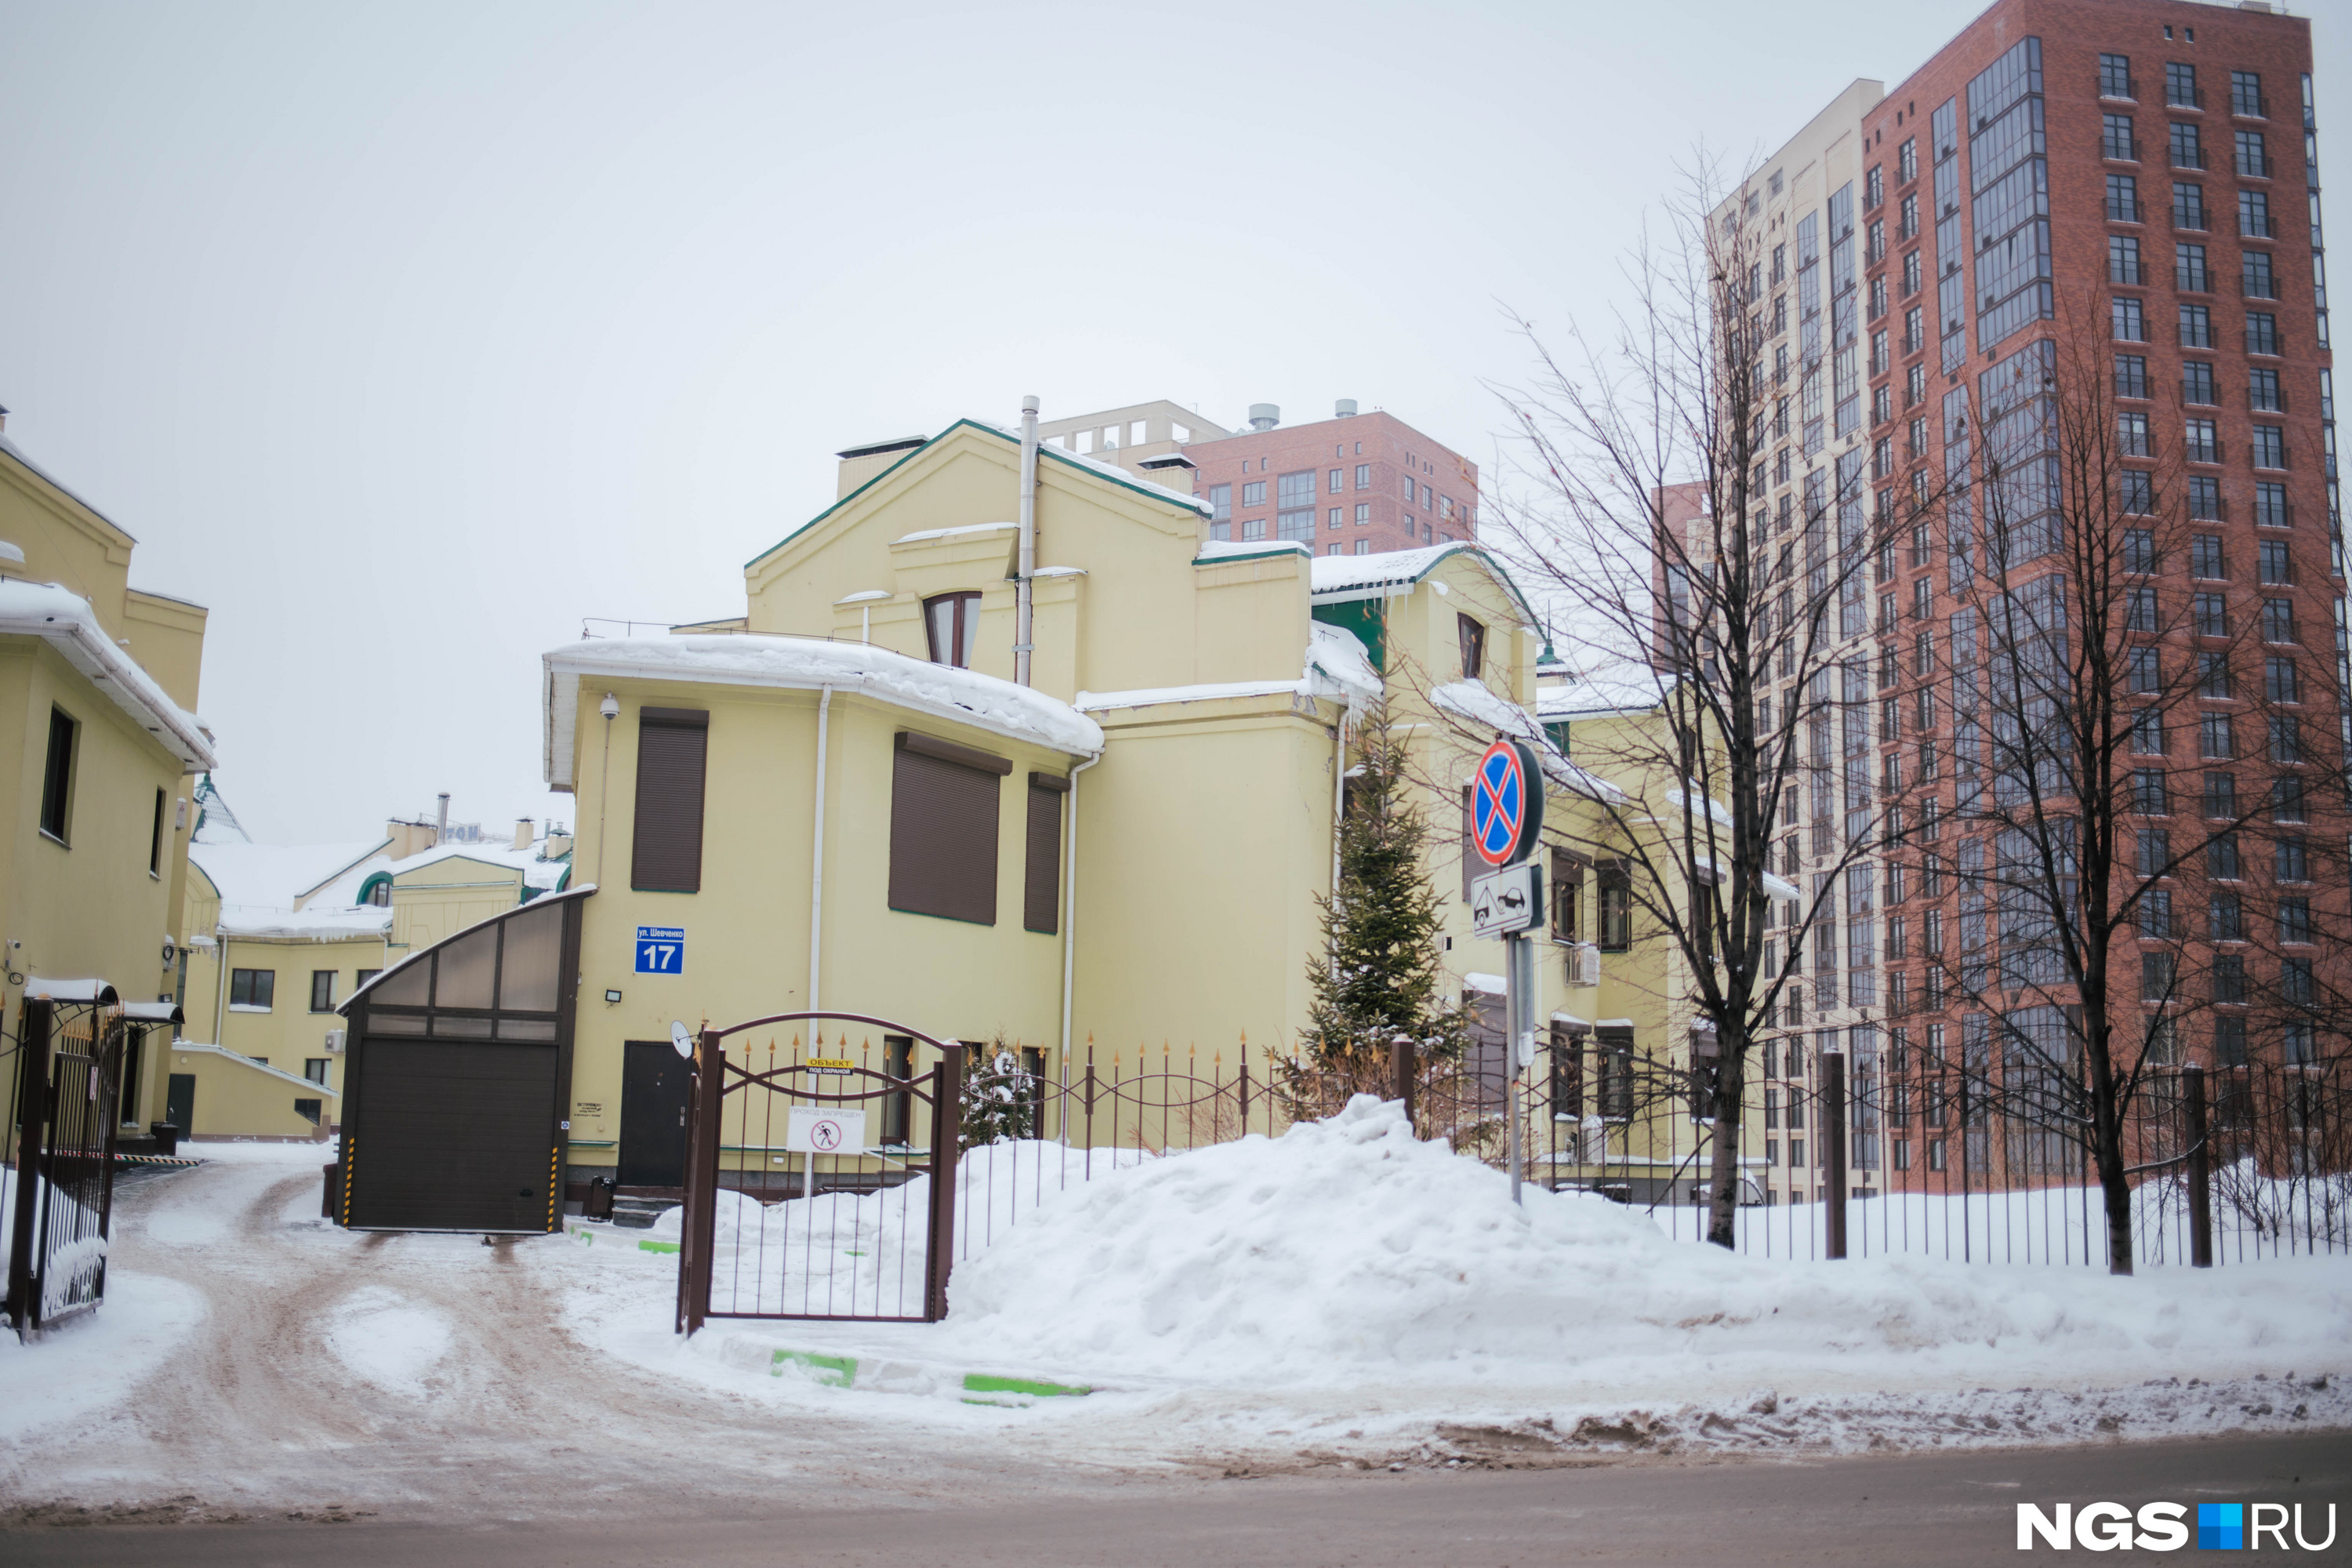 Клубный дом на Шевченко по-прежнему привлекает своим удобным и уединенным местоположением